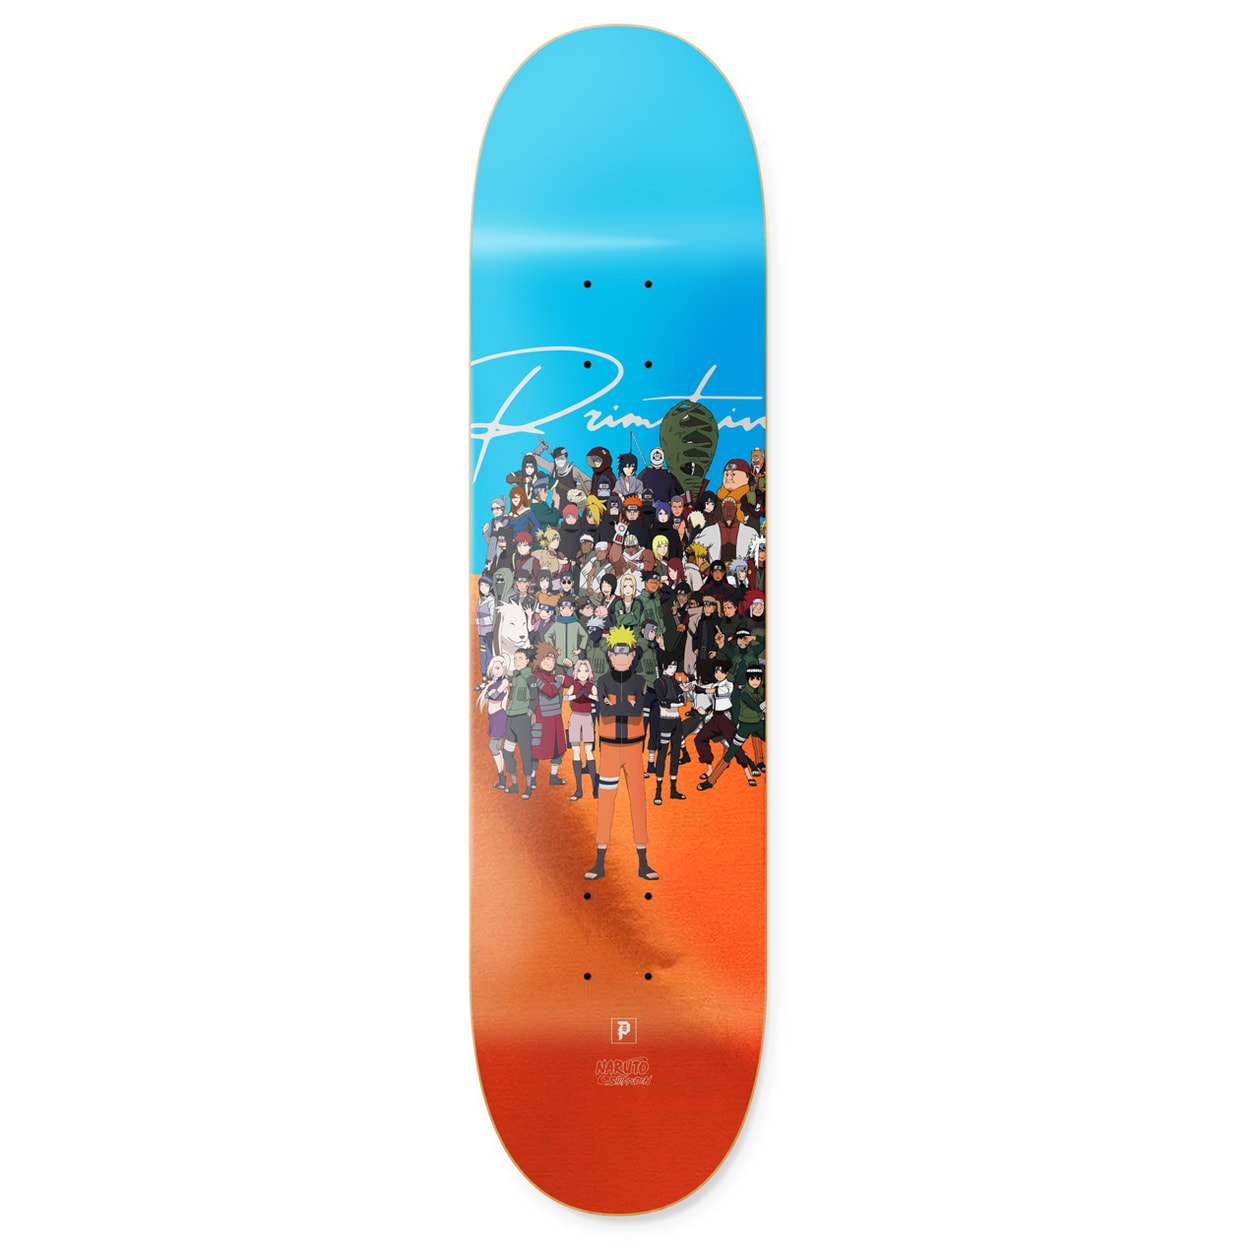 《Naruto》x Primitive Skateboarding 第二回聯乘系列發佈